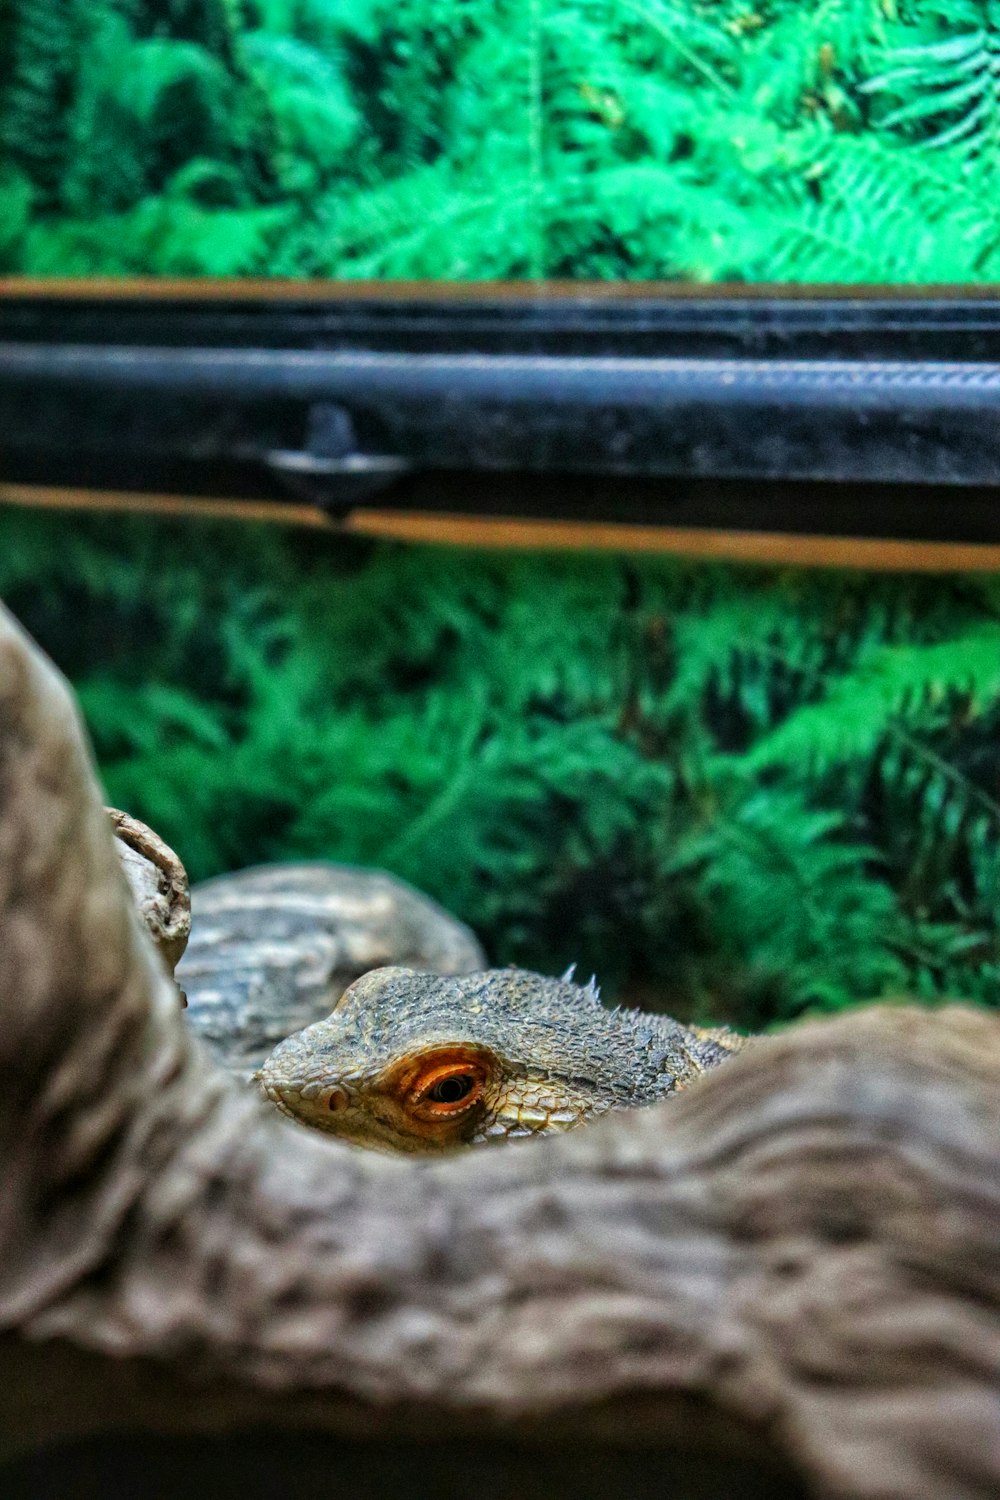 a close up of a lizard in a tank